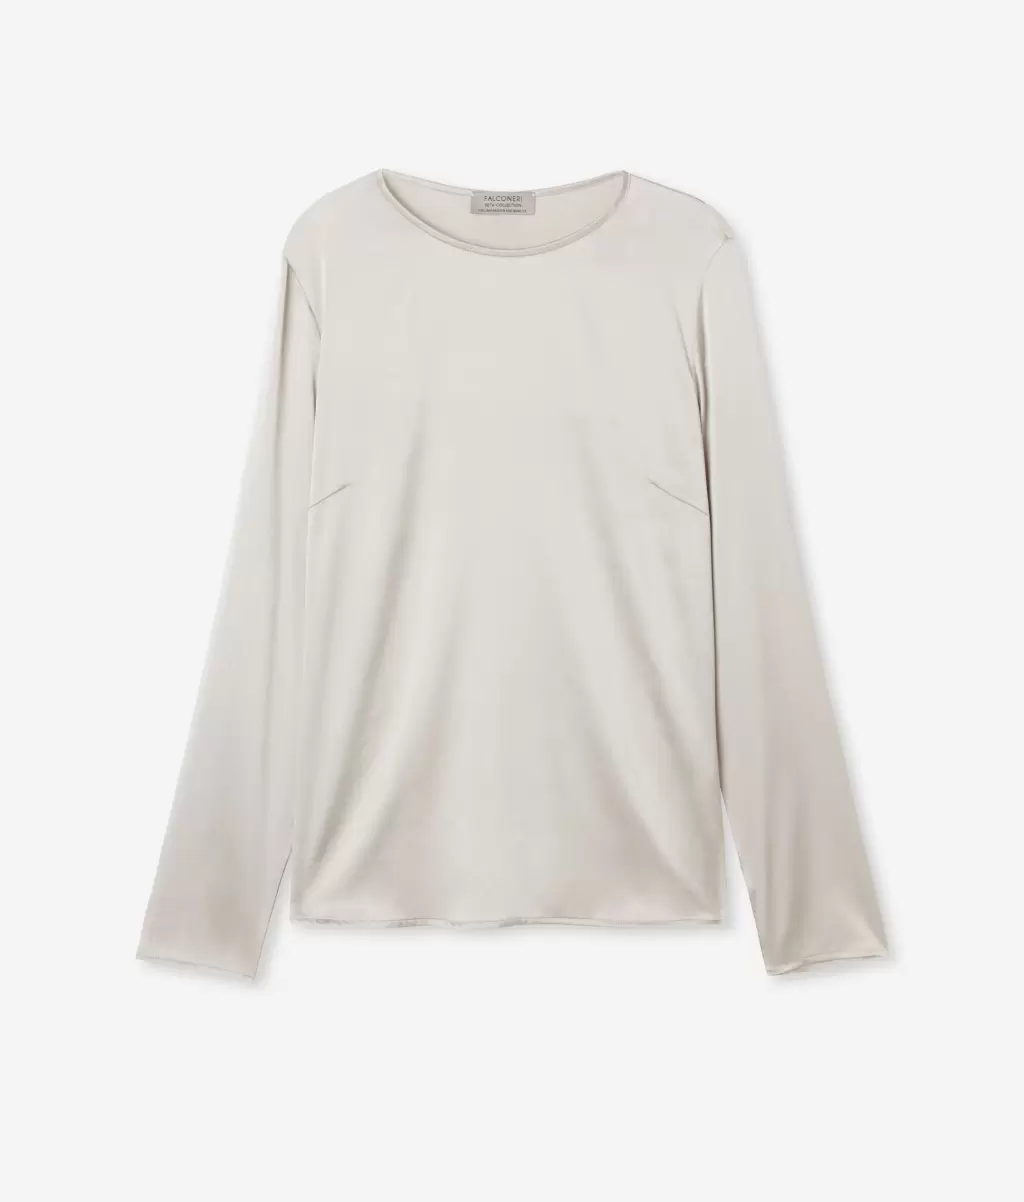 White Kobieta Falconeri Koszule I Bluzki Bluzka Z Okrągłym Dekoltem Z Satyny Jedwabnej - 4